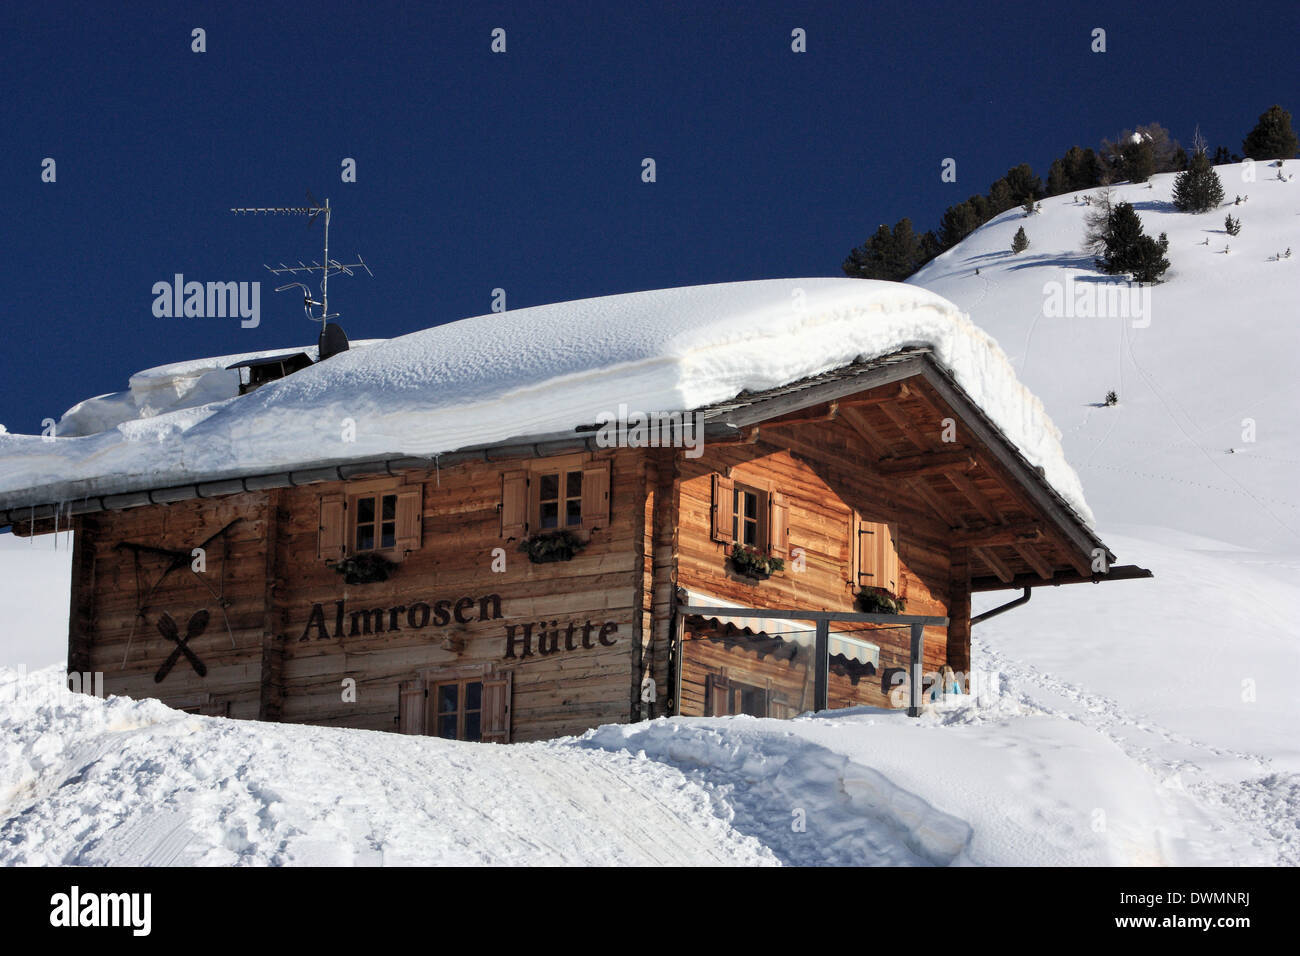 Ristorante Almrosen Hütte, Alpe di Siusi / Alpe di Siusi Alto Adige / Alto Adige, Italia Foto Stock